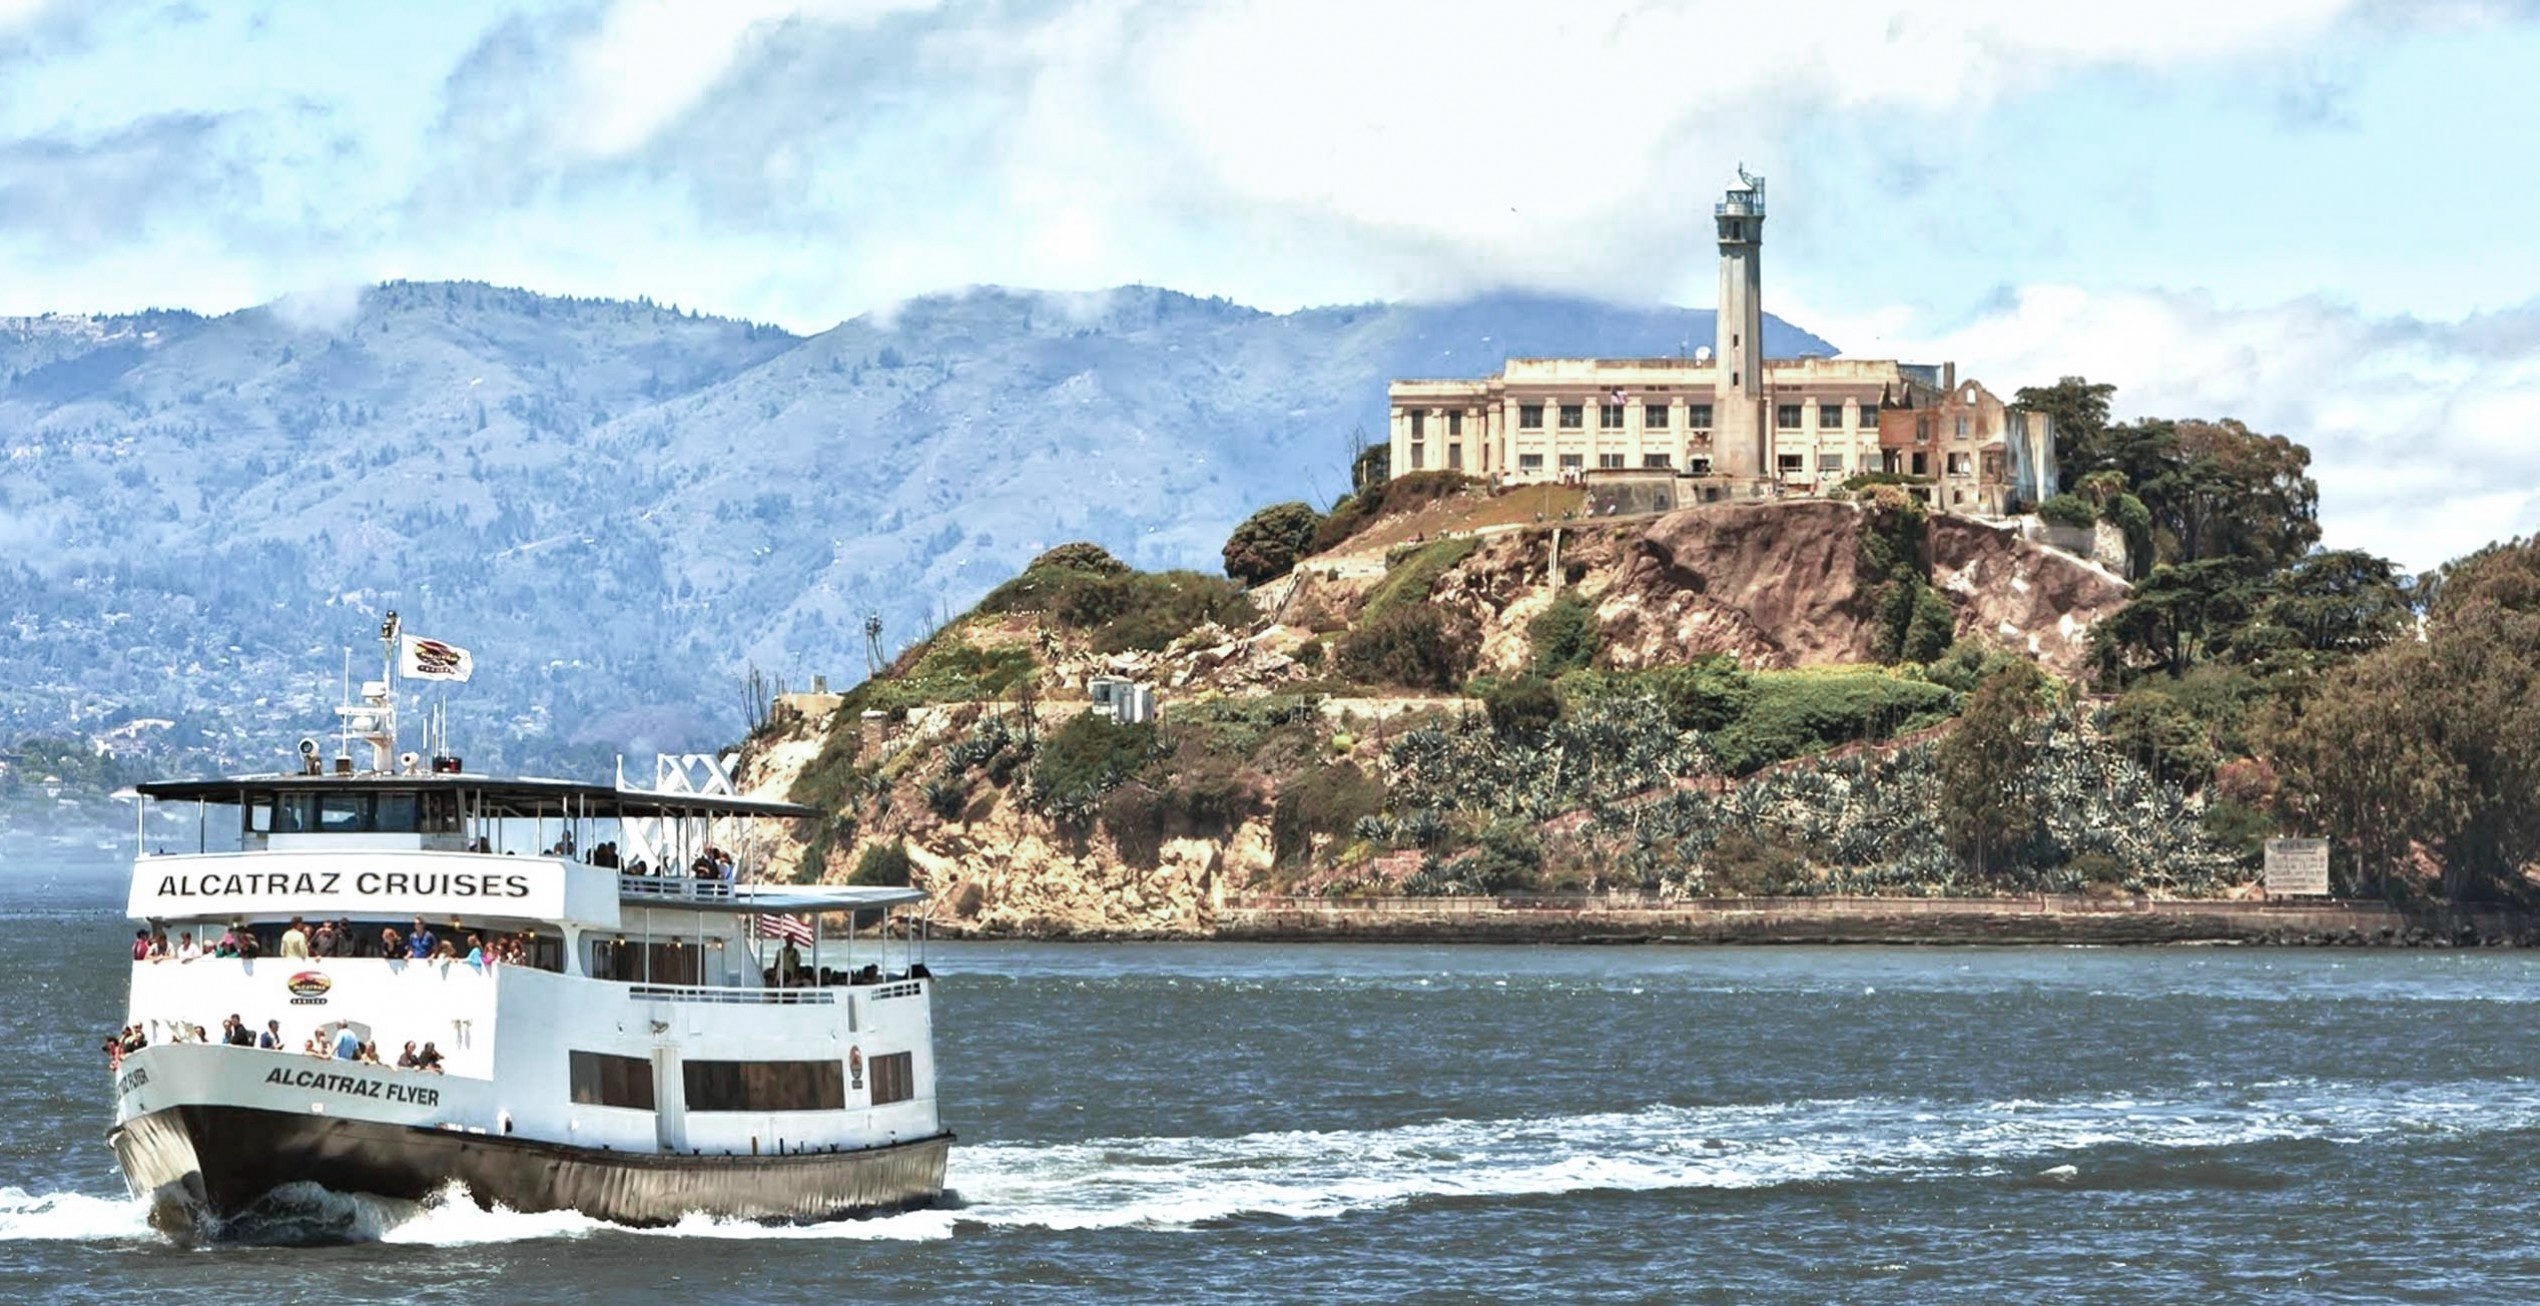 Alcatraz island, Alcatraz tour, Alcatraz San Francisco, Alcatraz history, Alcatraz, Alcatraz prison,Alcatraz cruises, Alcatraz excursion, must do in San Francisco ,Alcatraz museum, Alcatraz views